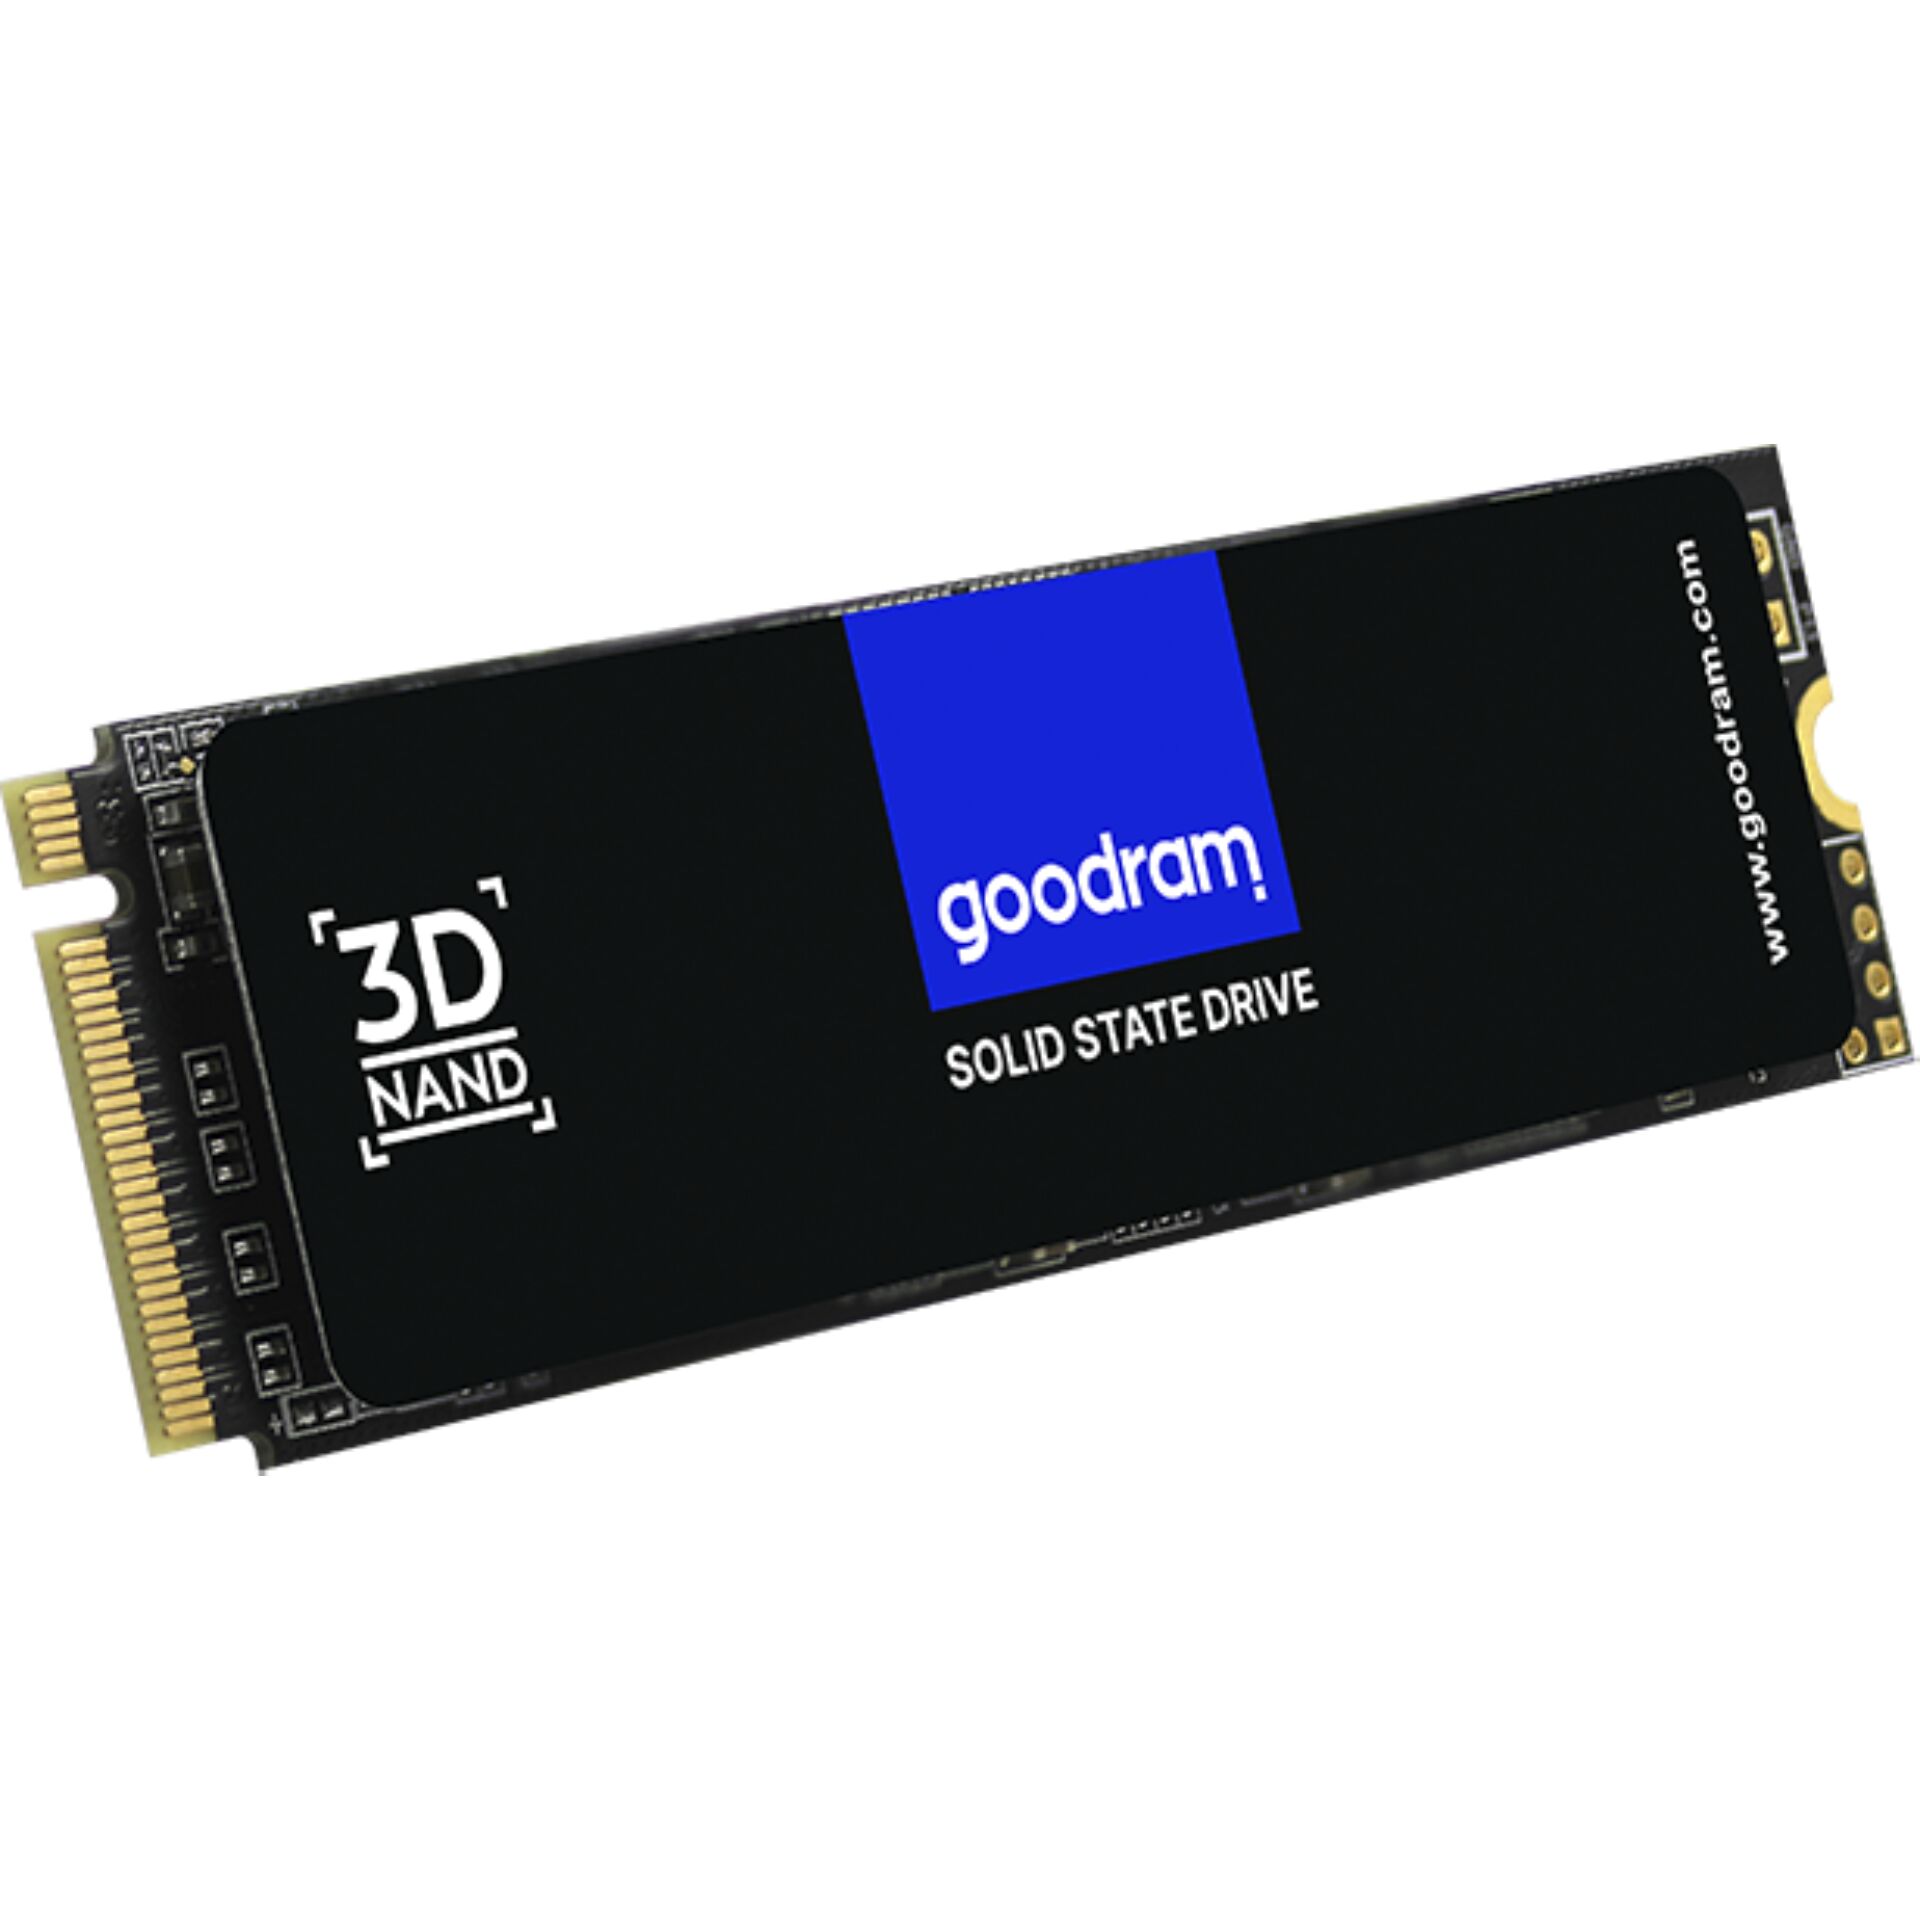 Goodram PX500 Gen.2 M.2 1 TB PCI Express 3.0 3D NAND NVMe